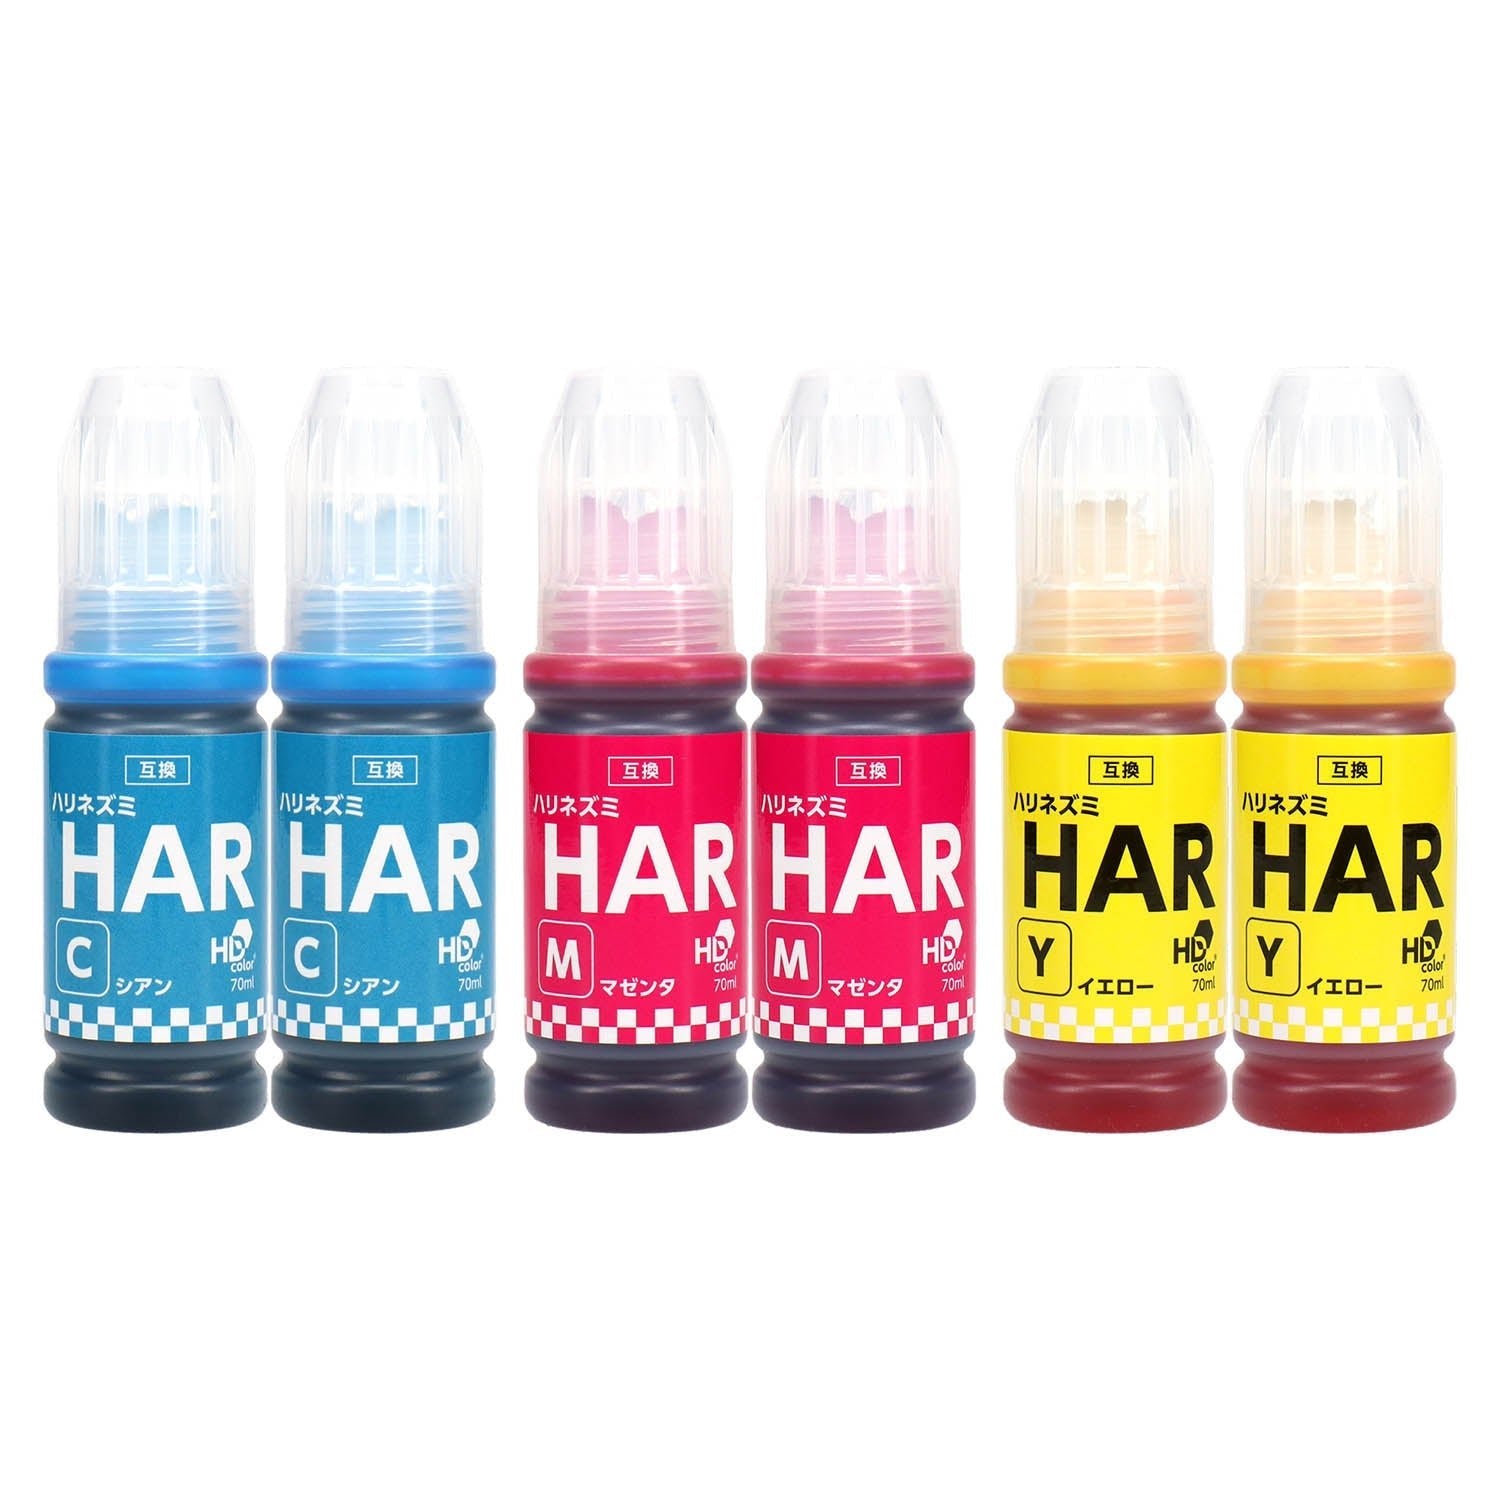 エプソン用 HAR (ハリネズミ) 互換インクボトル カラー3色